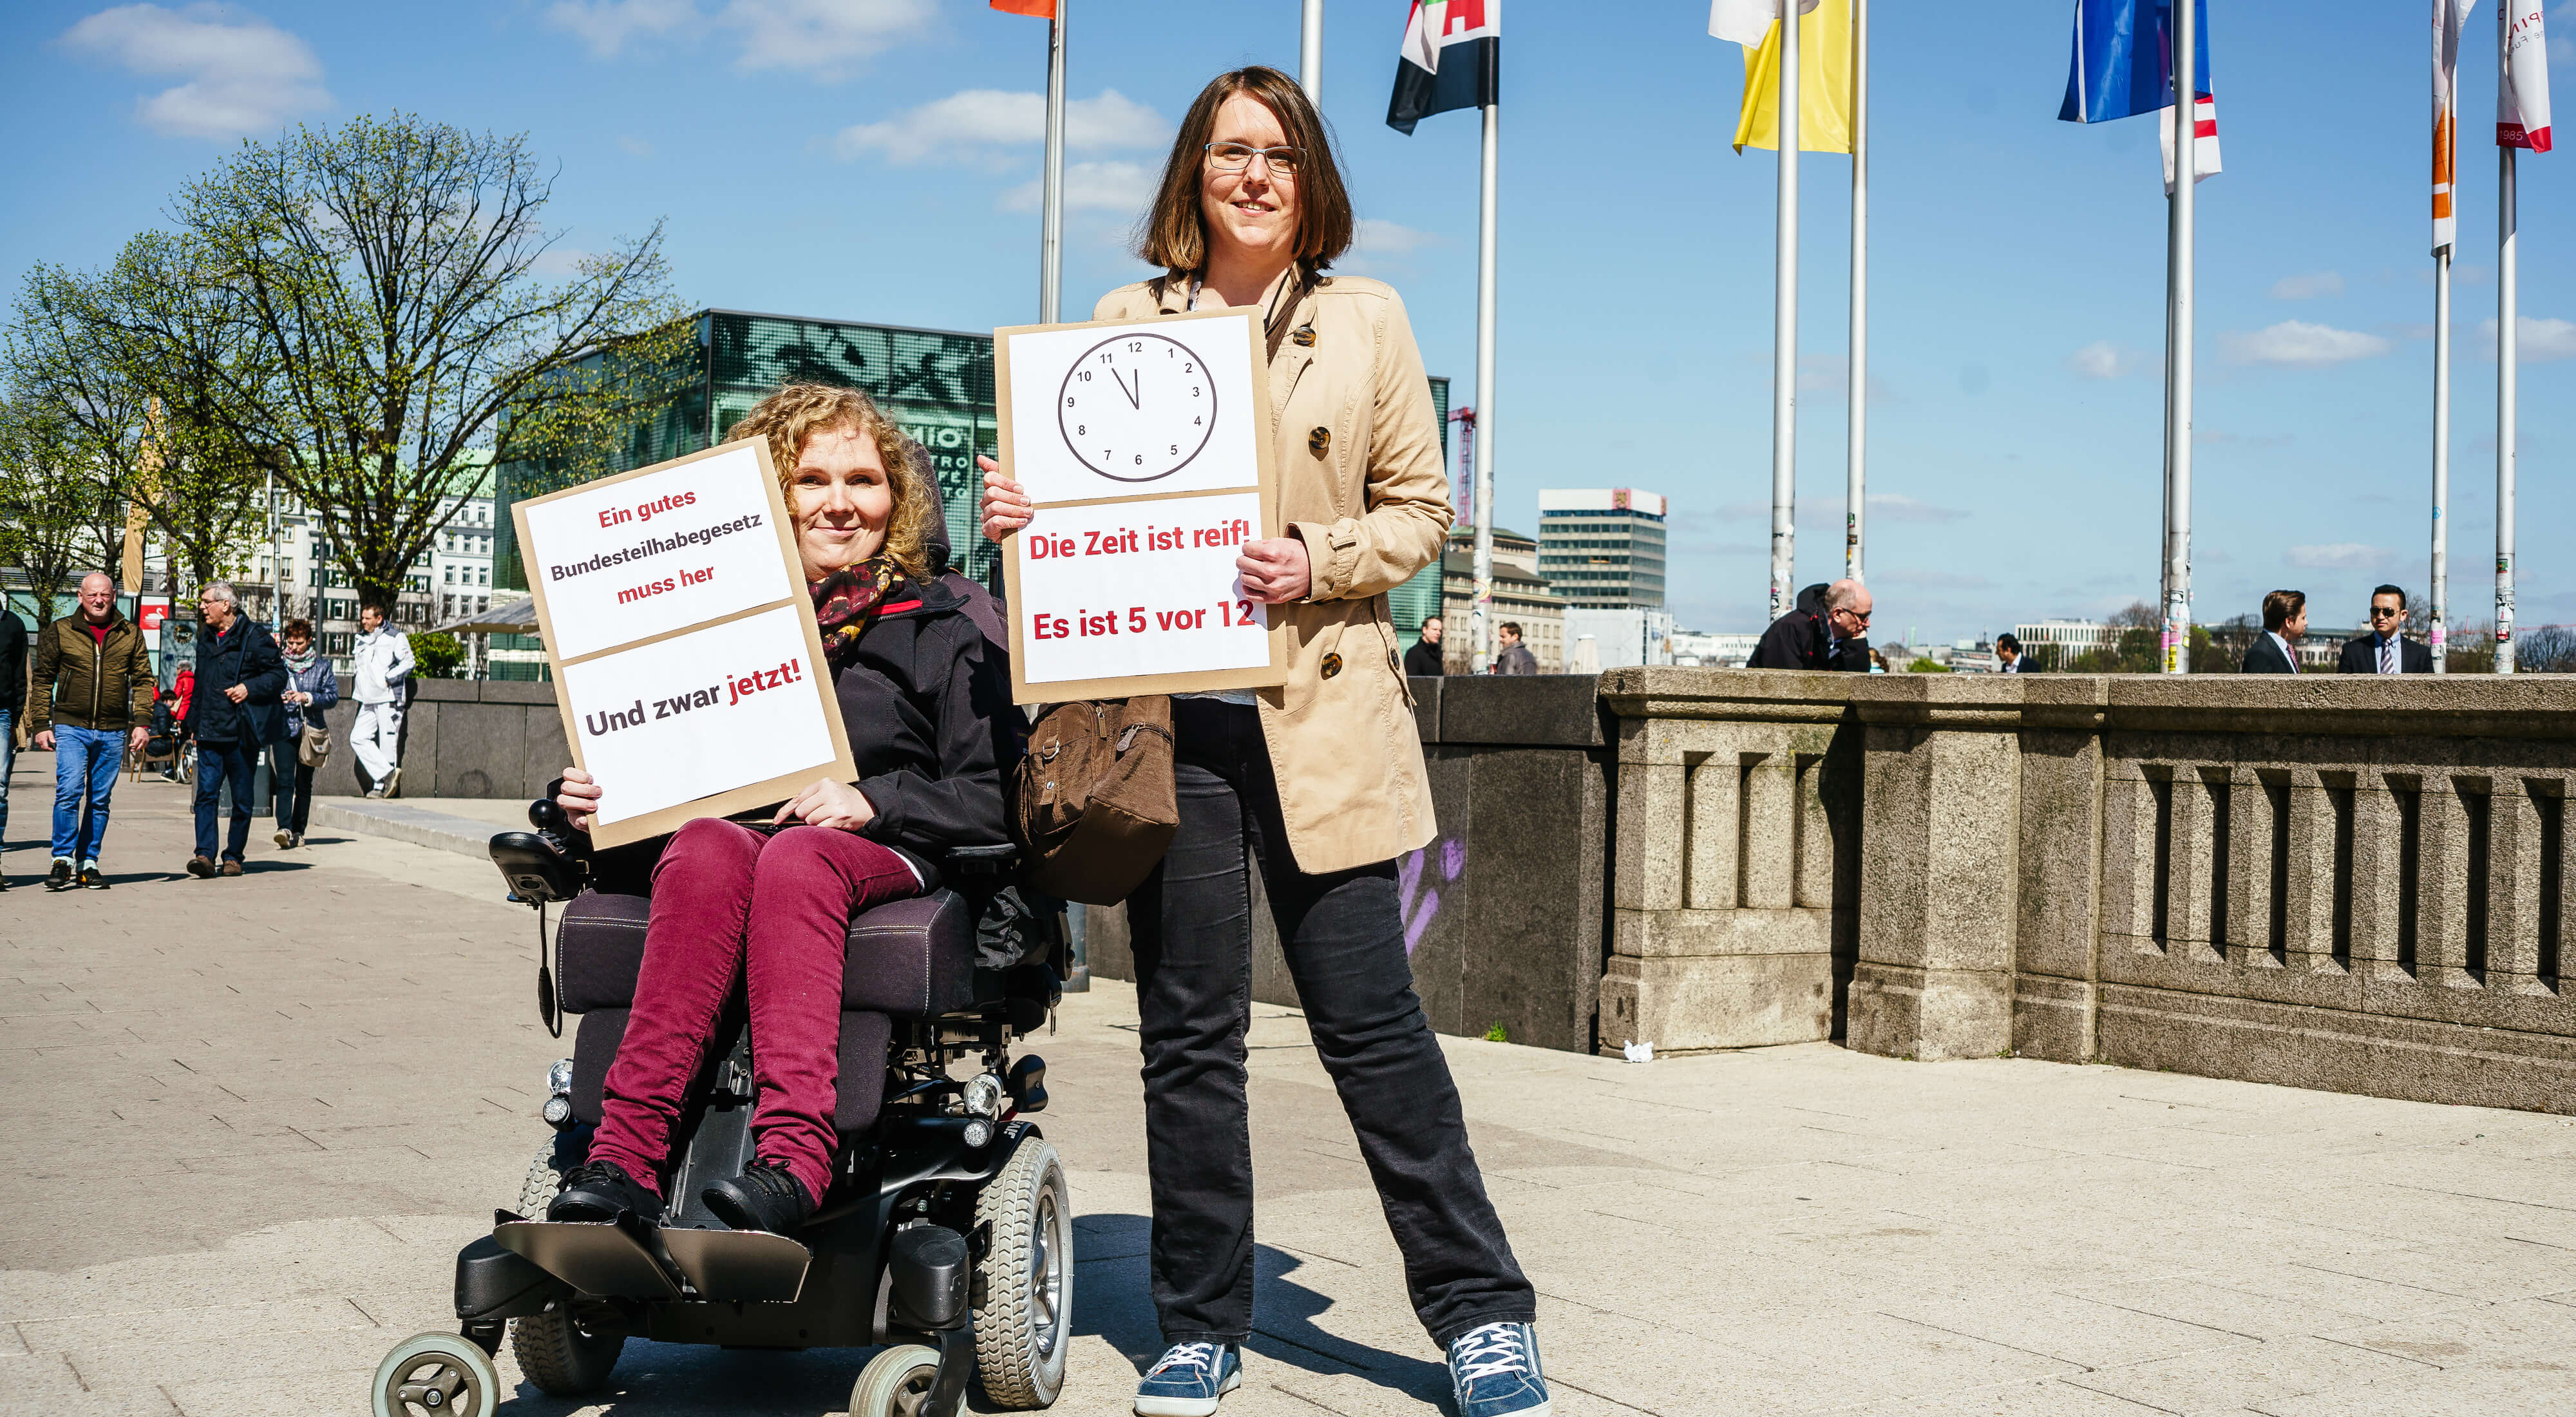 Zwei Frauen halten Protestschilder hoch für "Teilhabe Jetzt". Eine Frau sitzt im Rollstuhl. Sie sind auf einer Brücke in Hamburg, Fahnen im Hintergrund.